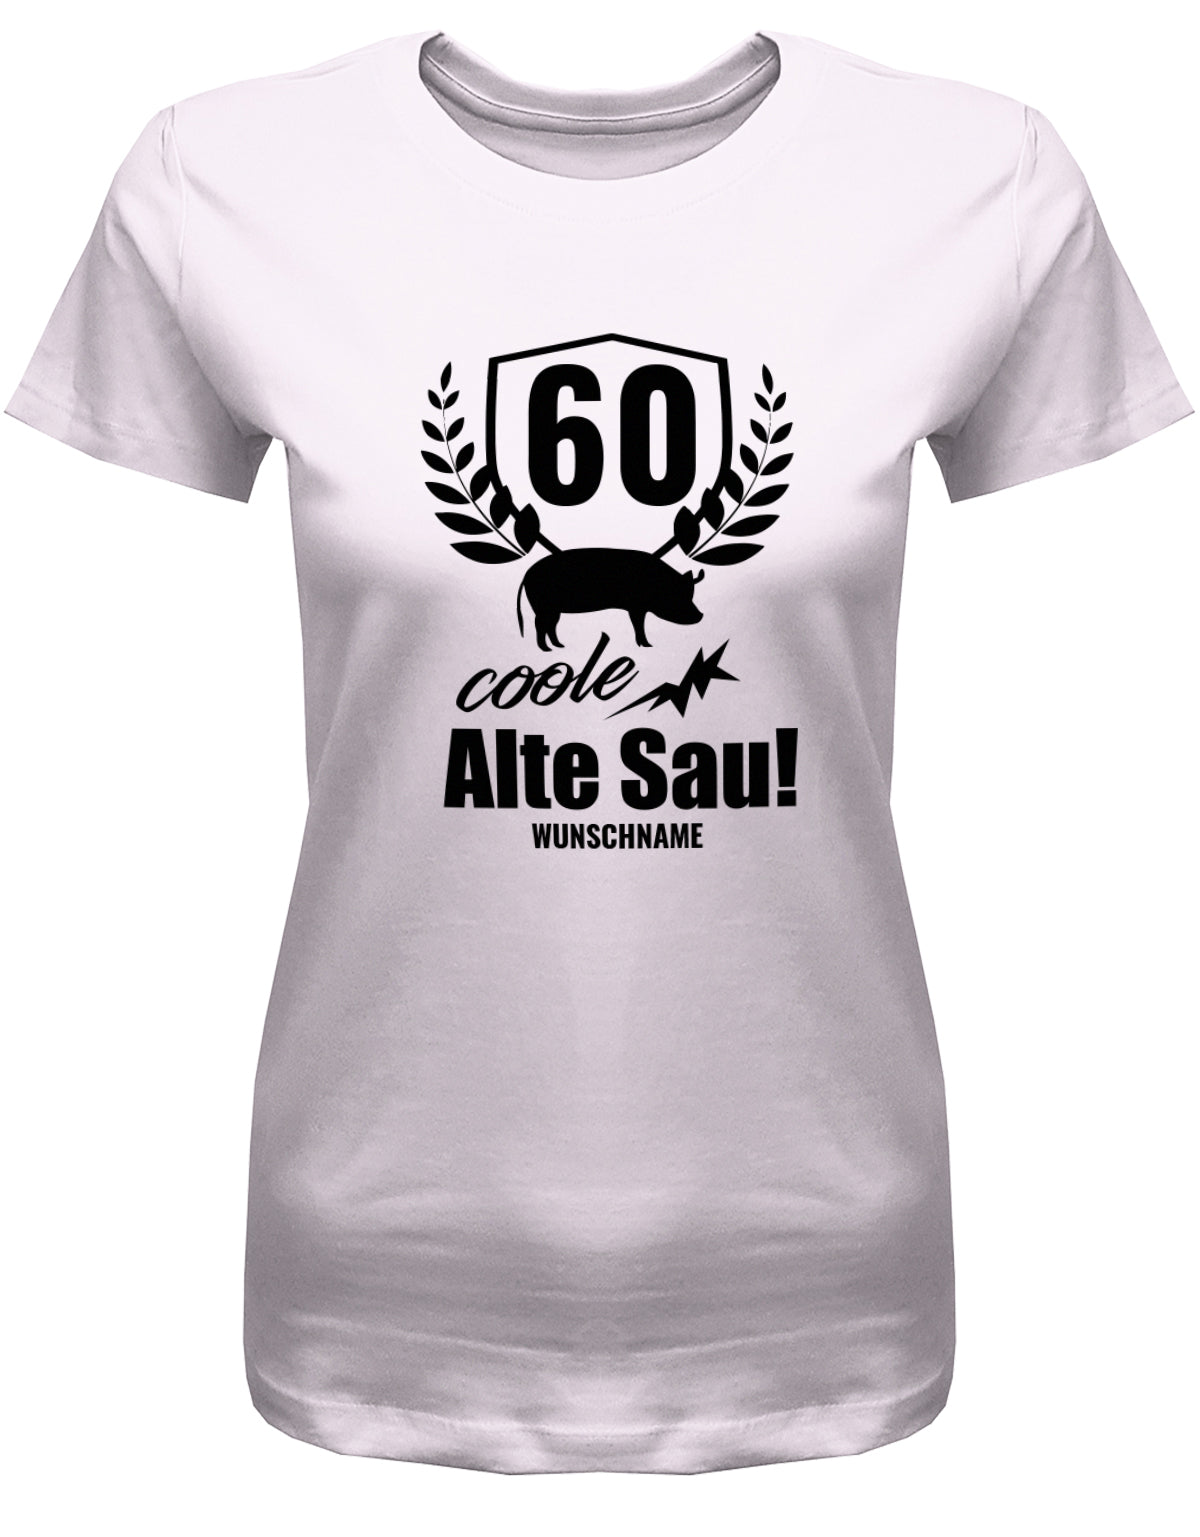 Lustiges T-Shirt zum 60 Geburtstag für die Frau Bedruckt mit 60 coole alte Sau personalisiert mit Name Rosa